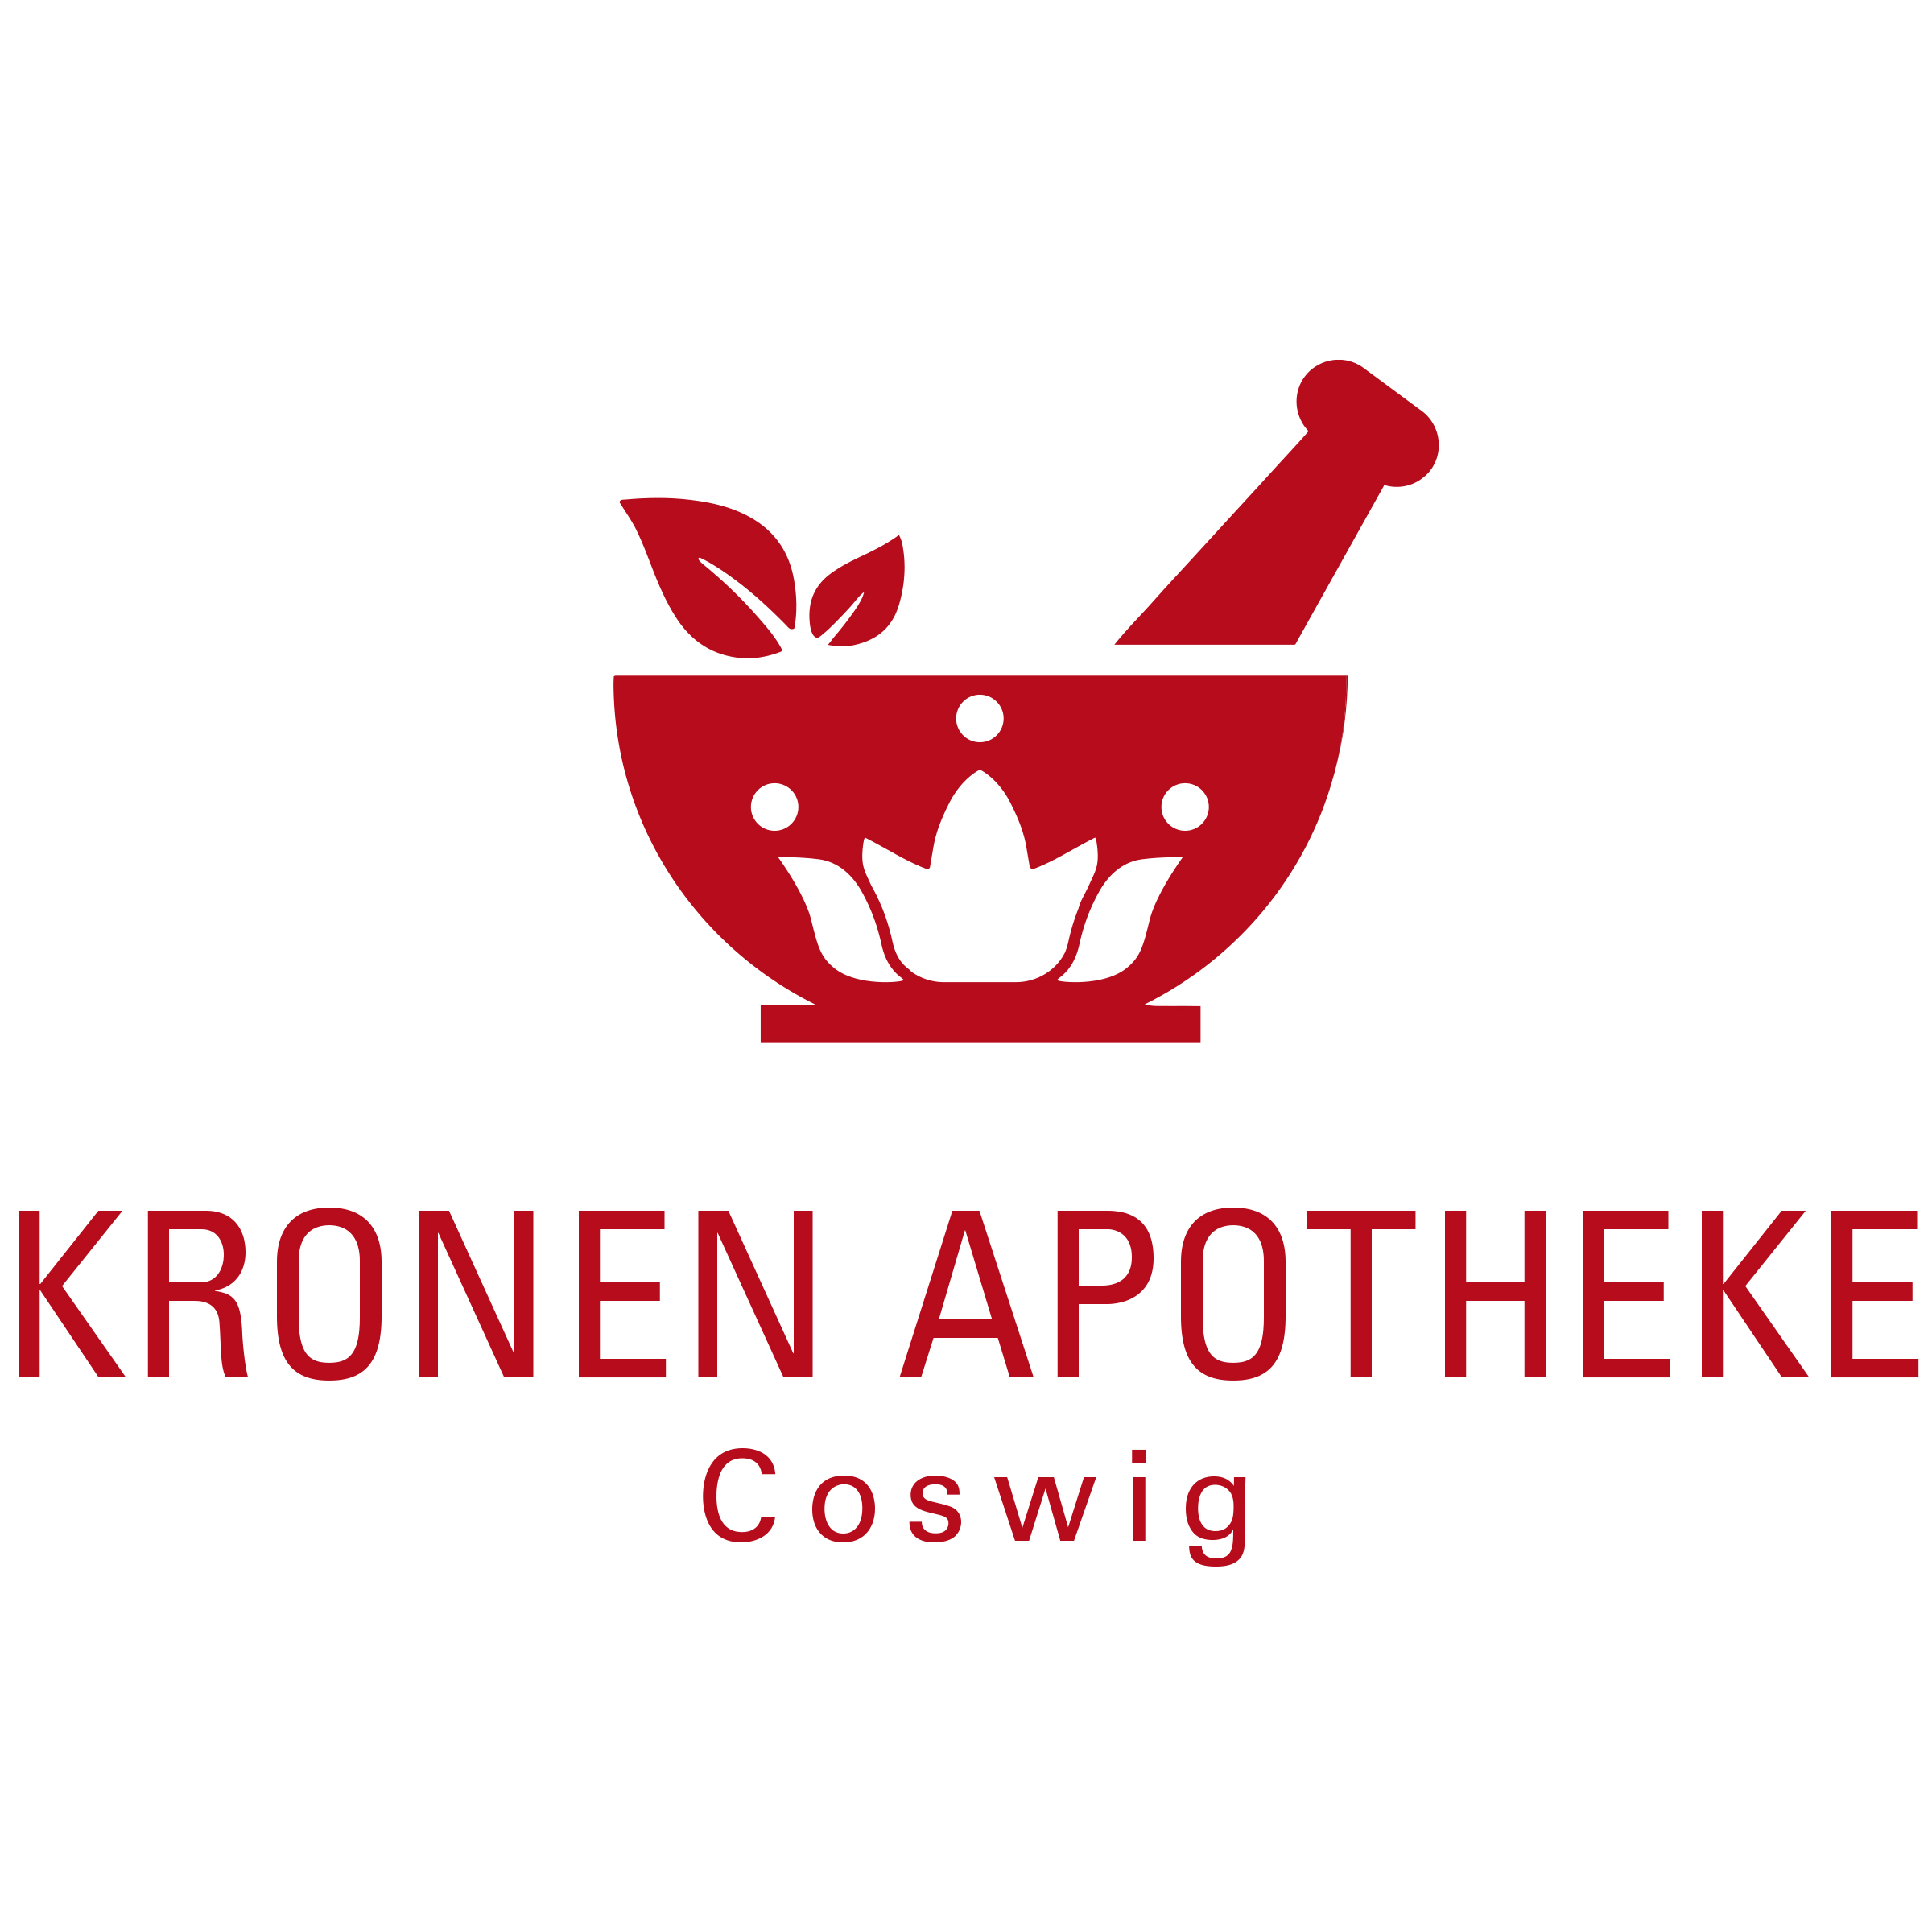 Kronen Apotheke Logo